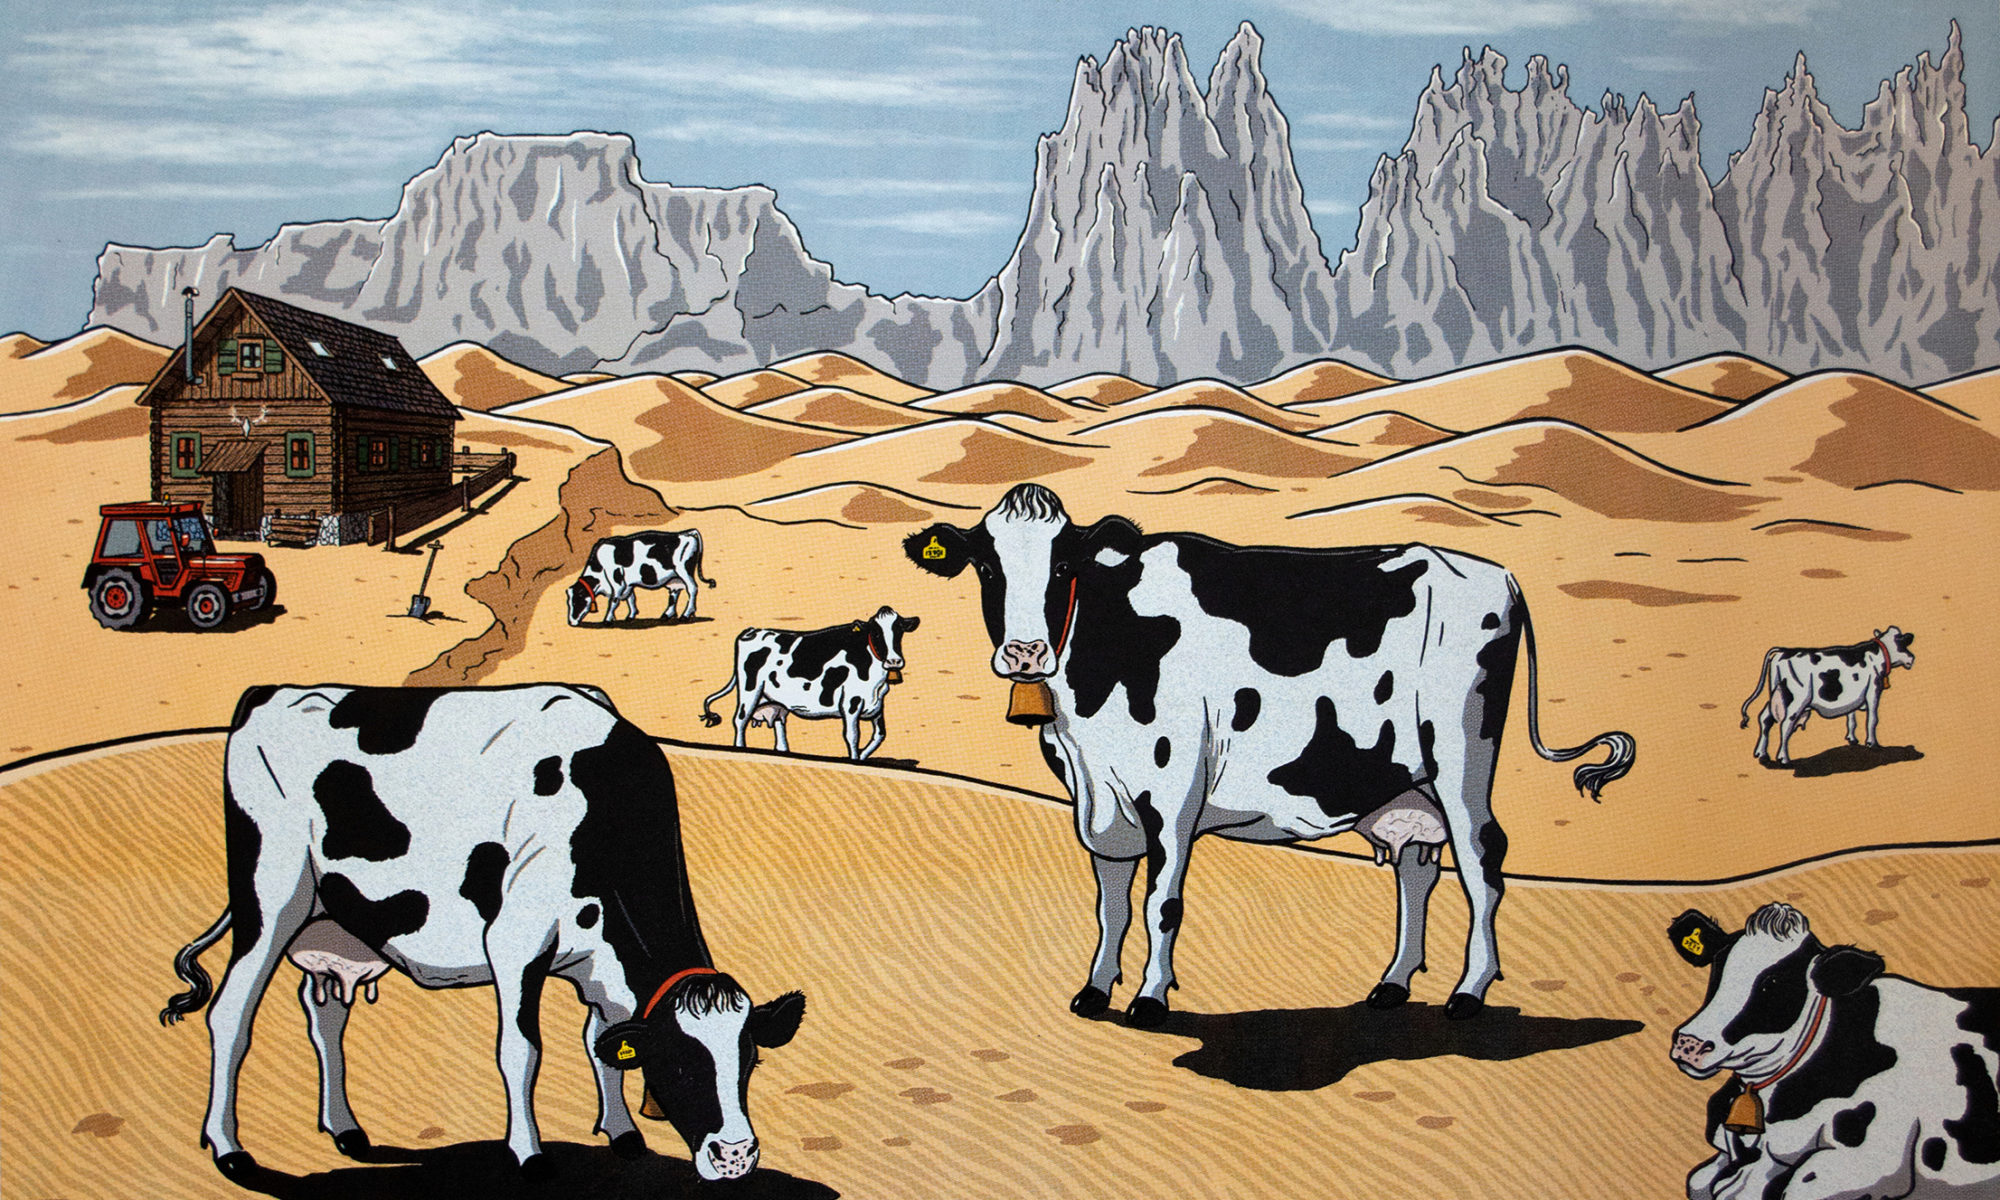 COWS IN THE DESERT (Verwüstung)